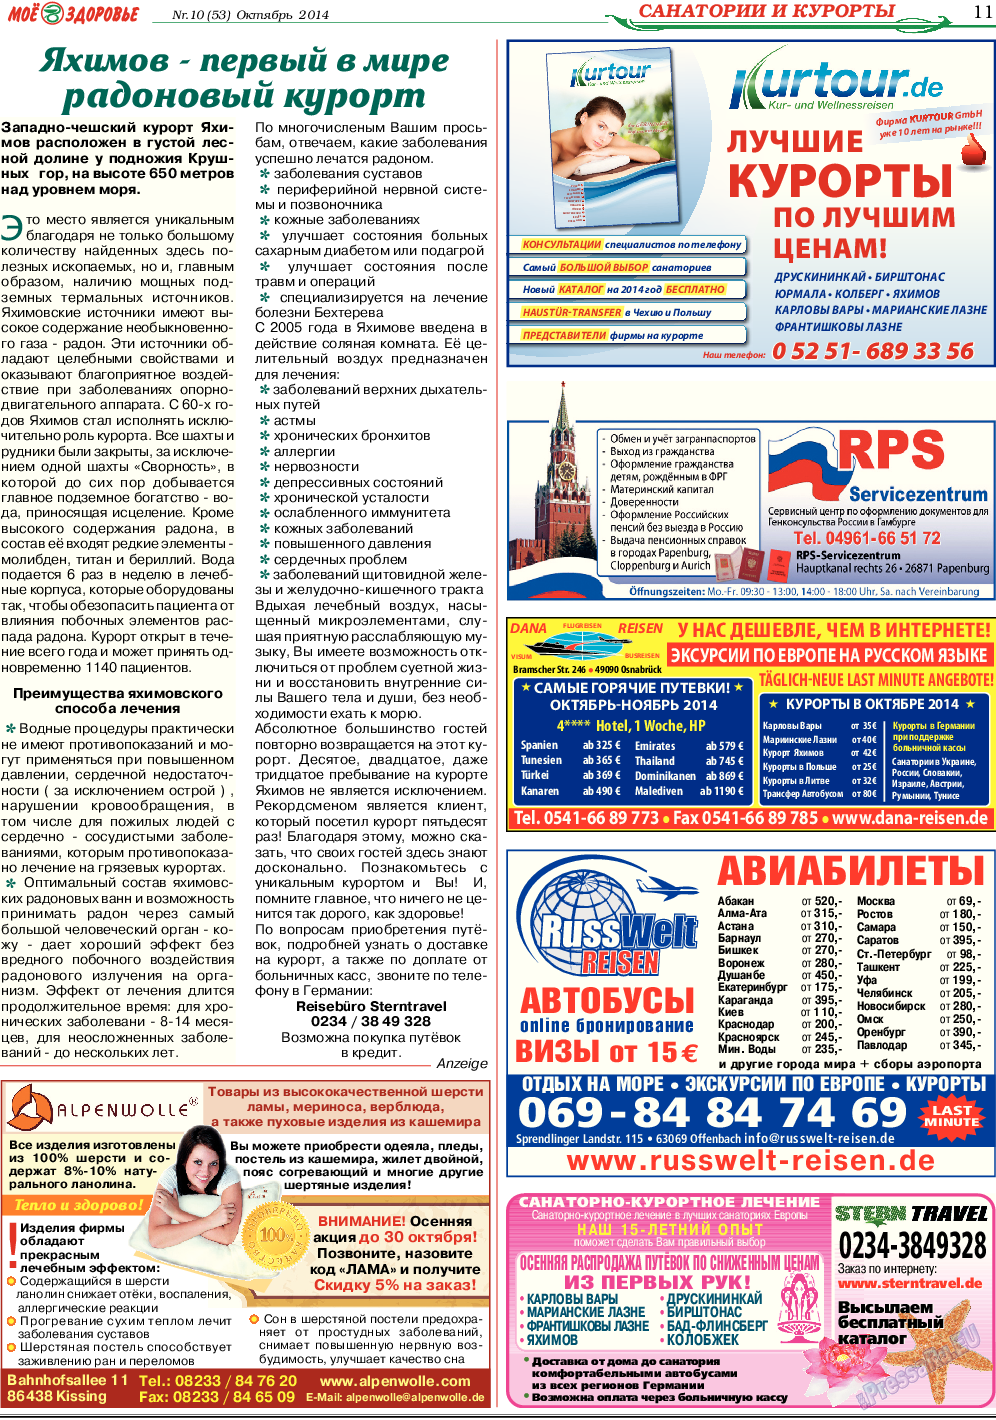 Кругозор (газета). 2014 год, номер 10, стр. 11